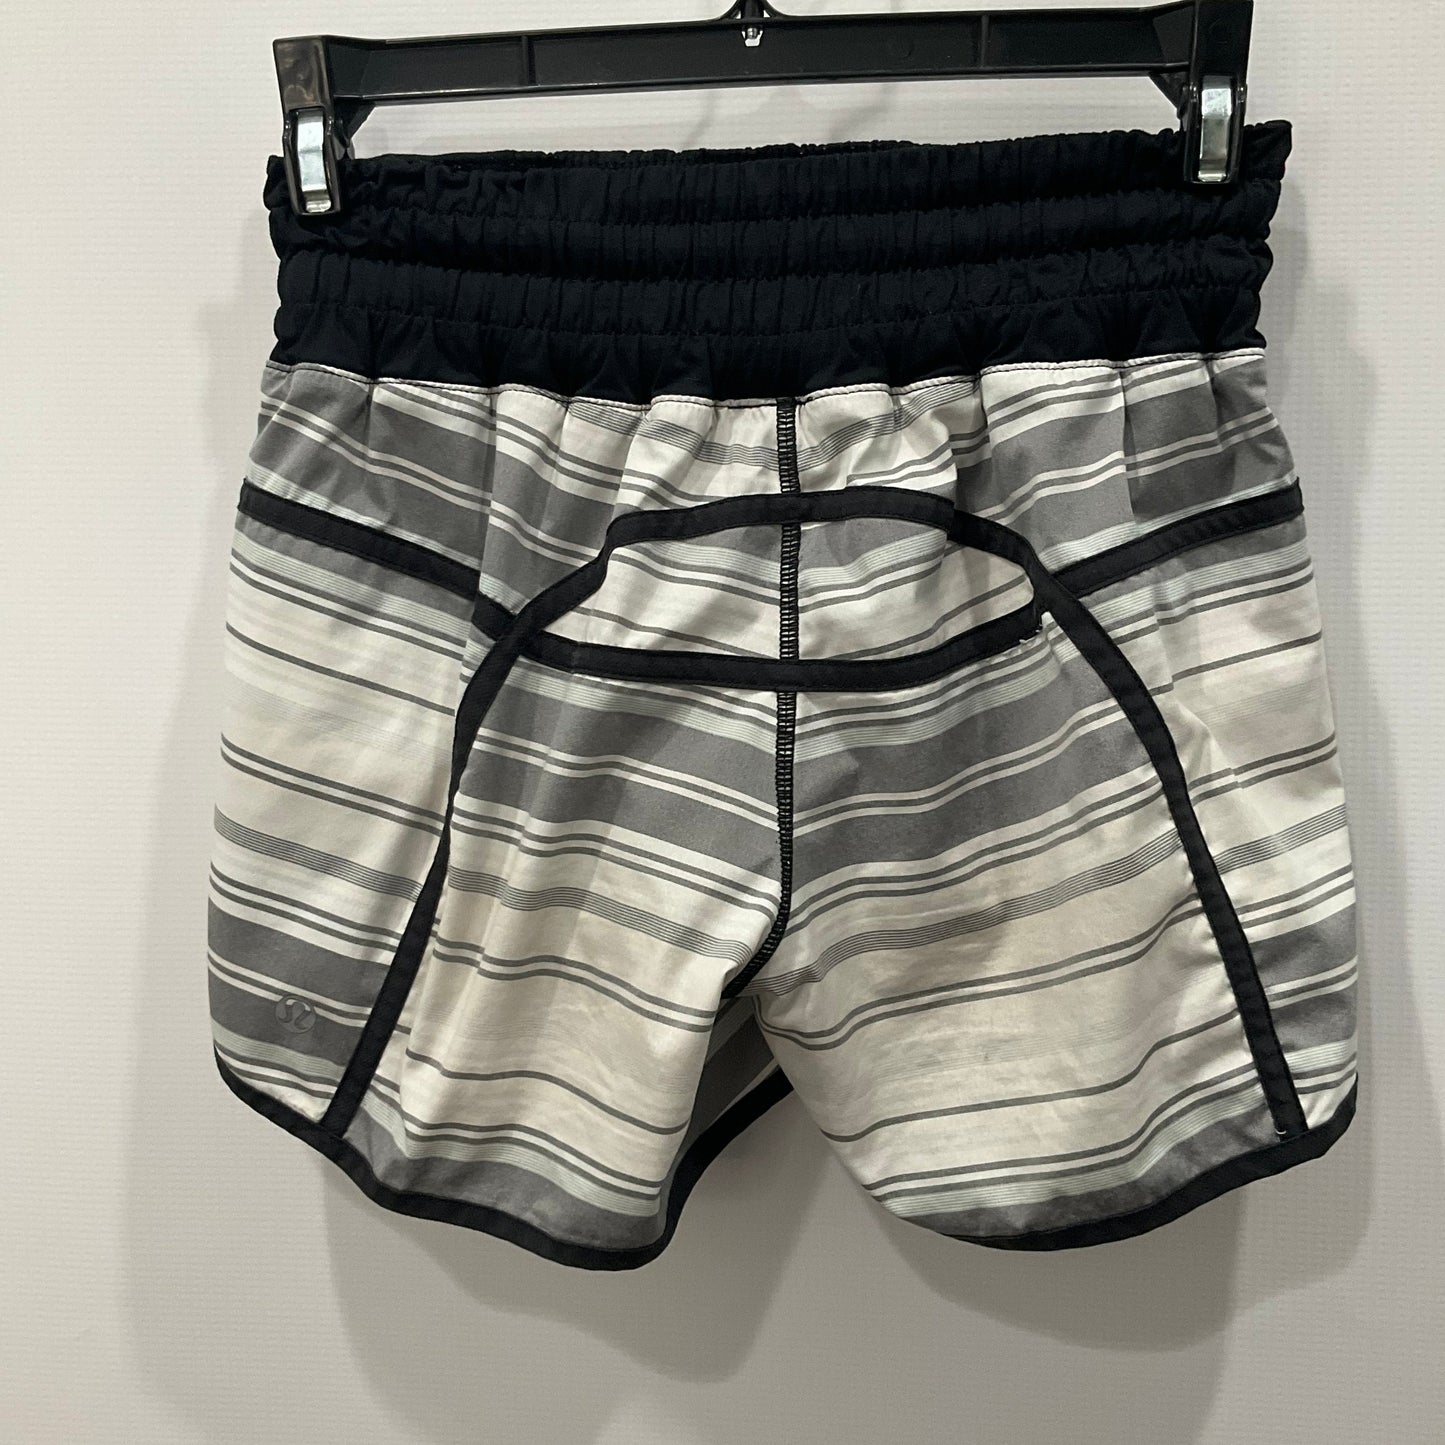 Black & White Athletic Shorts Lululemon, Size 4